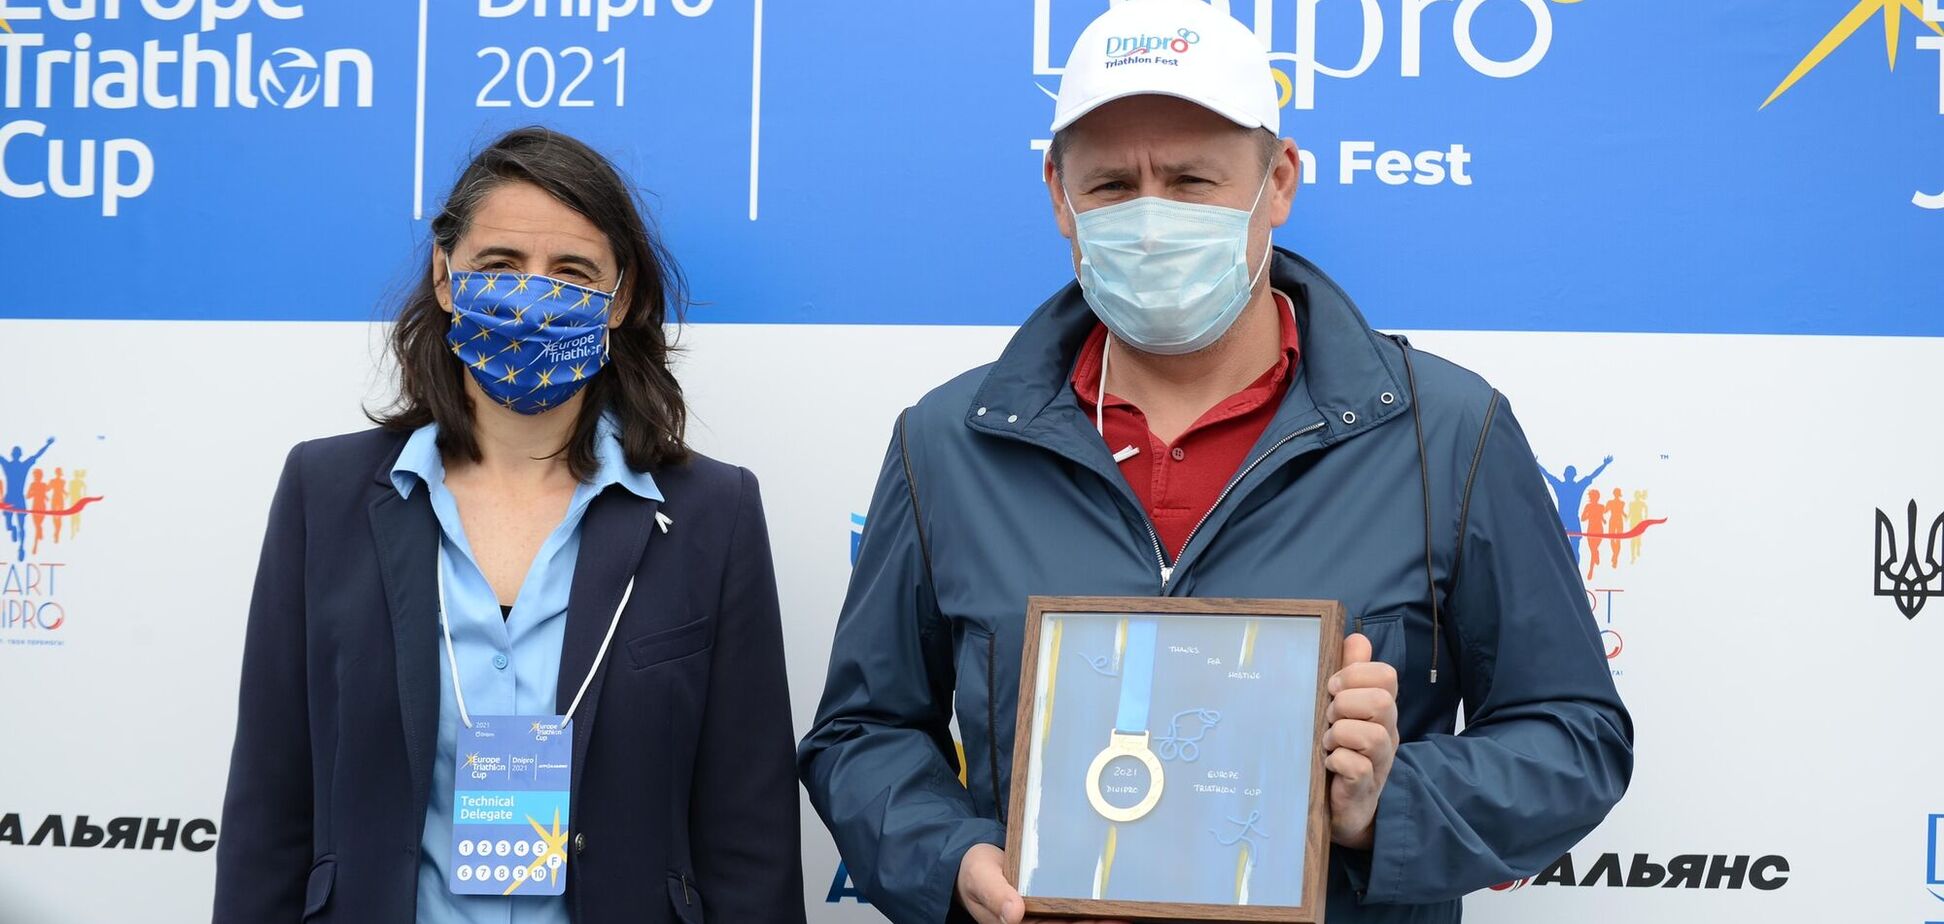 Представниця Європейського союзу триатлоністів назвала Дніпро столицею триатлонного фестивалю в Україні